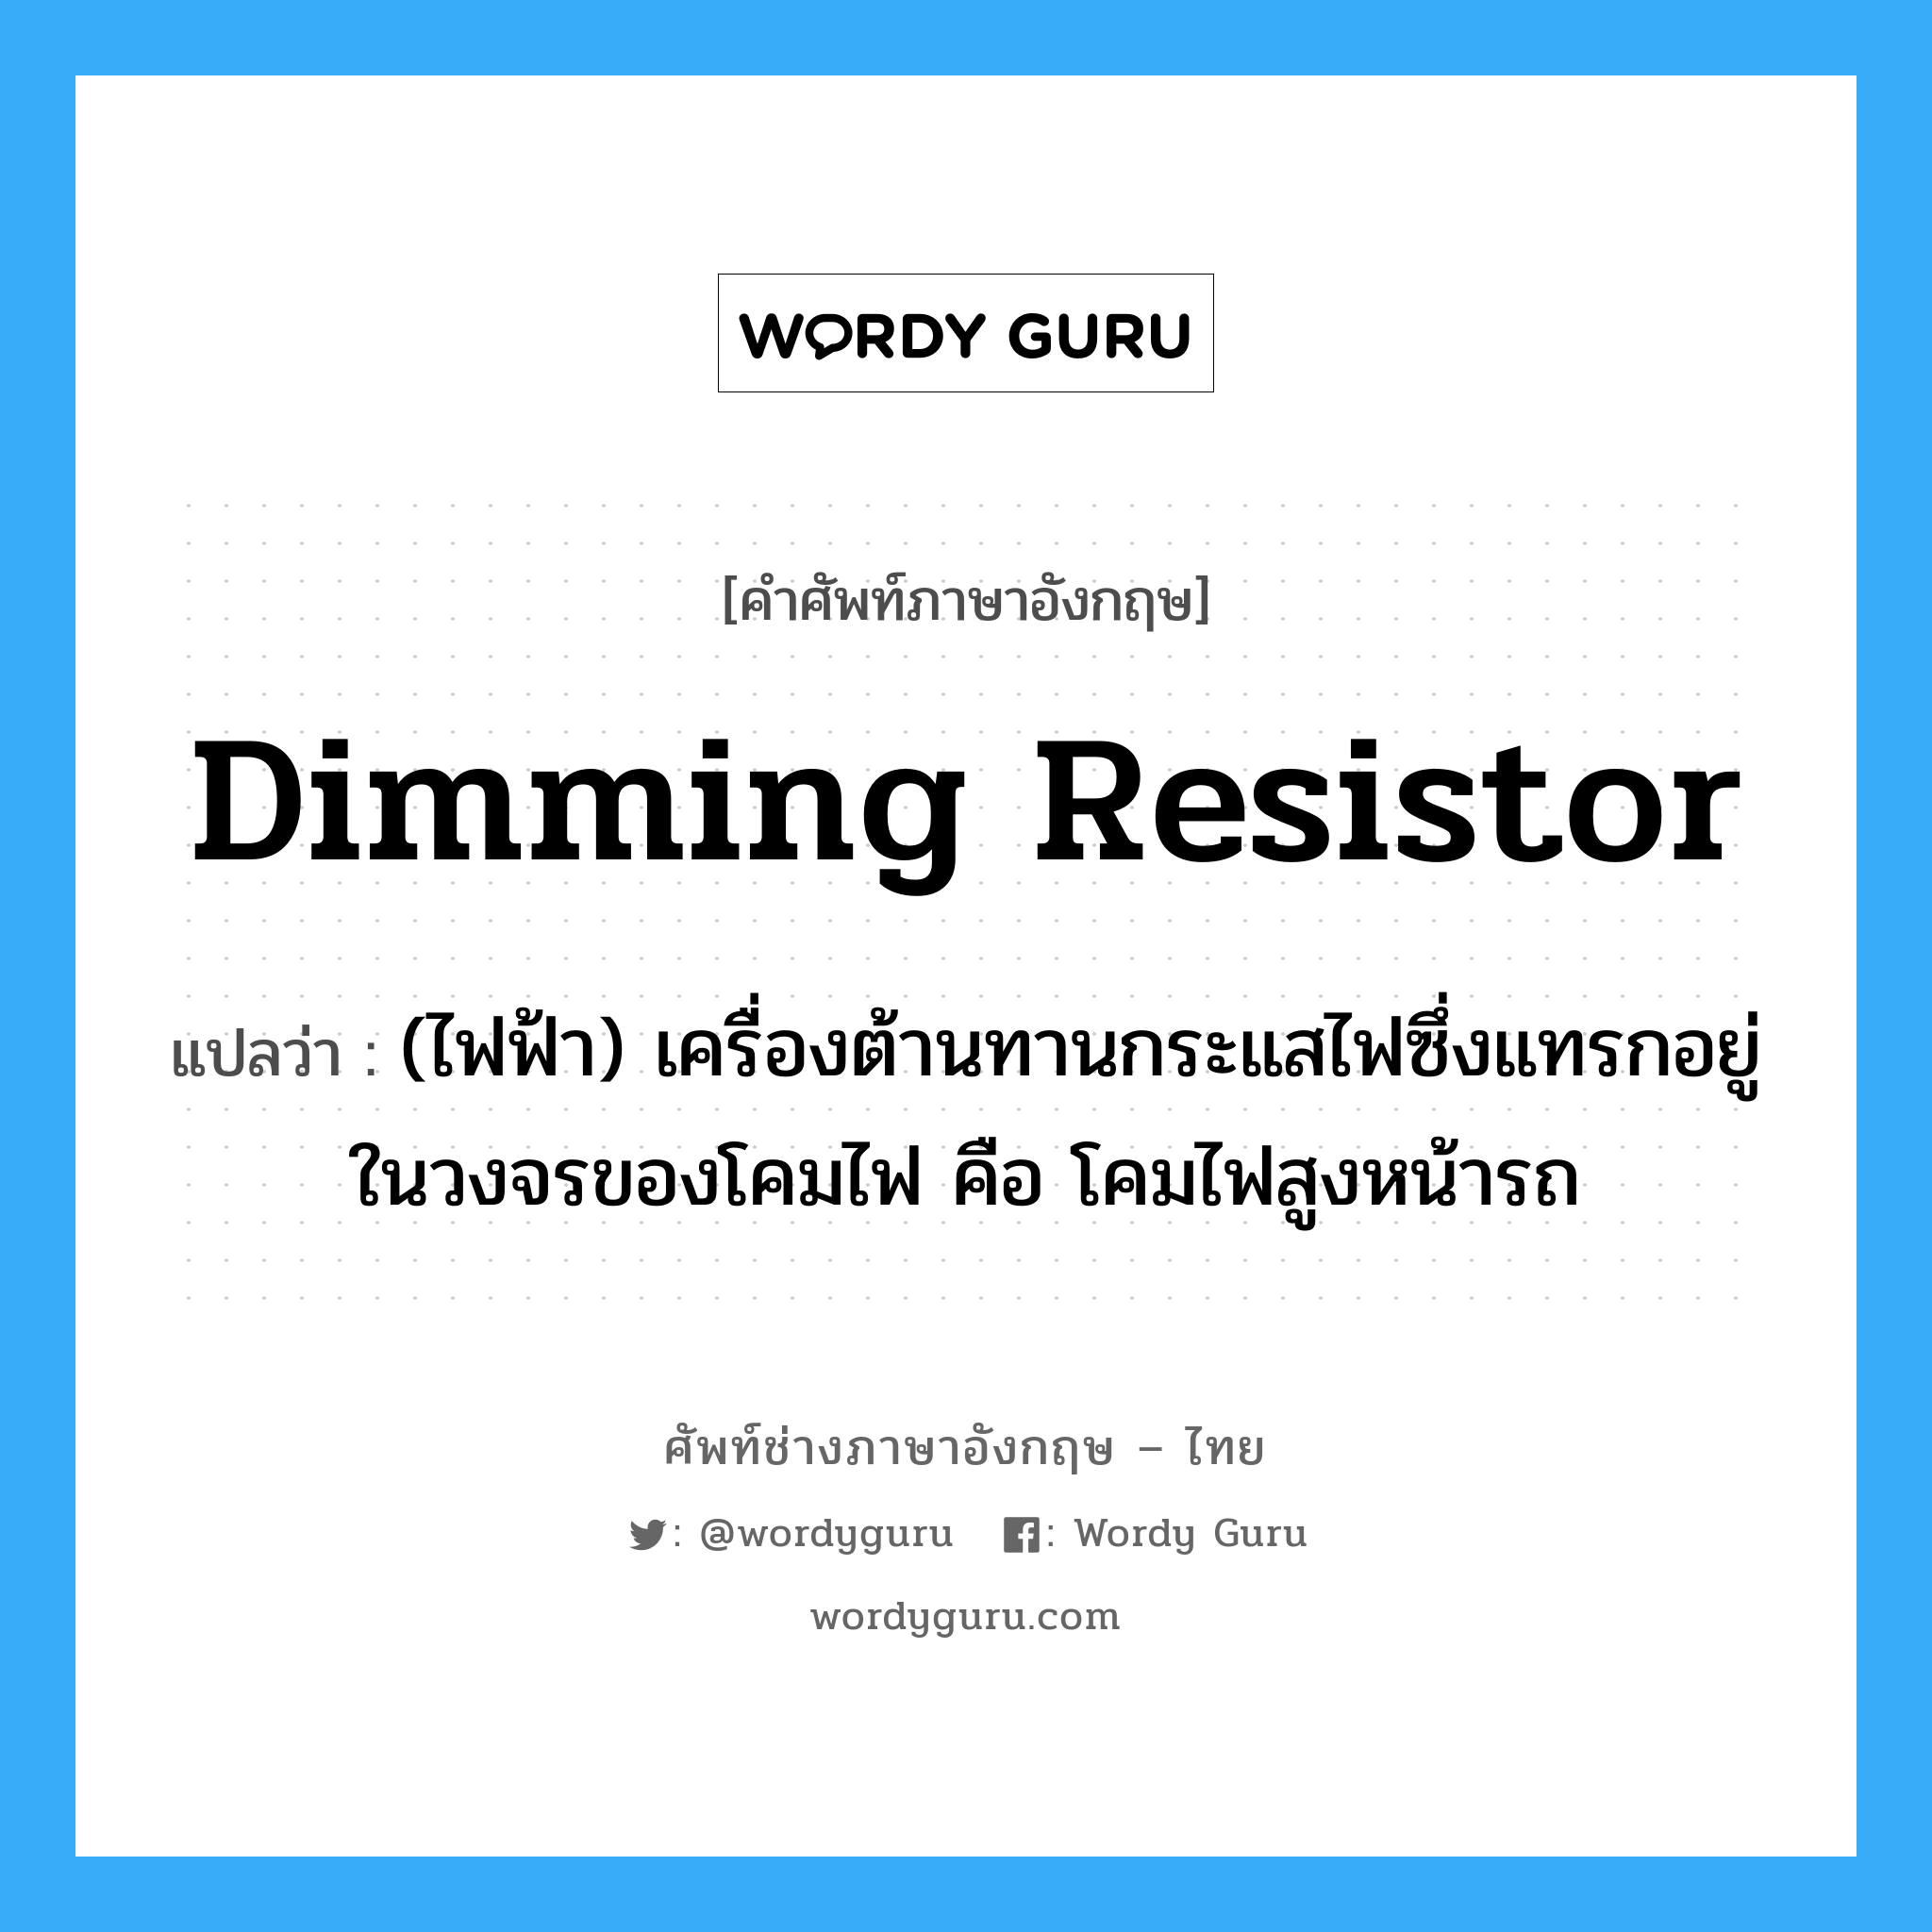 dimming resistor แปลว่า?, คำศัพท์ช่างภาษาอังกฤษ - ไทย dimming resistor คำศัพท์ภาษาอังกฤษ dimming resistor แปลว่า (ไฟฟ้า) เครื่องต้านทานกระแสไฟซึ่งแทรกอยู่ในวงจรของโคมไฟ คือ โคมไฟสูงหน้ารถ